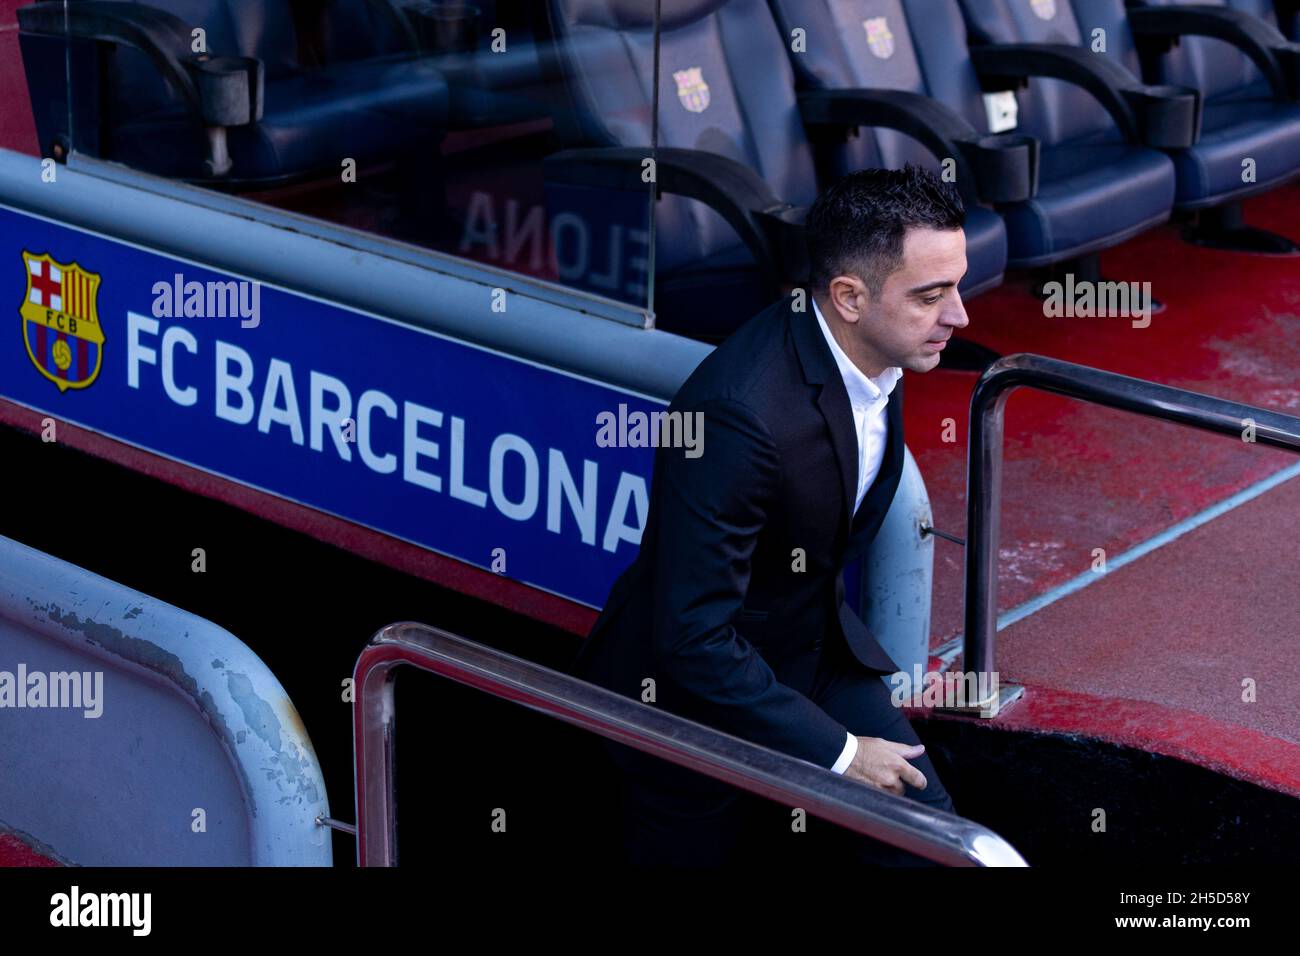 Barcelona. November 2021. Der Cheftrainer des FC Barcelona, Xavi Hernandez, reagiert während der Enthüllungszeremonie am 8. November 2021 in Barcelona, Spanien. Quelle: Joan Gosa/Xinhua/Alamy Live News Stockfoto